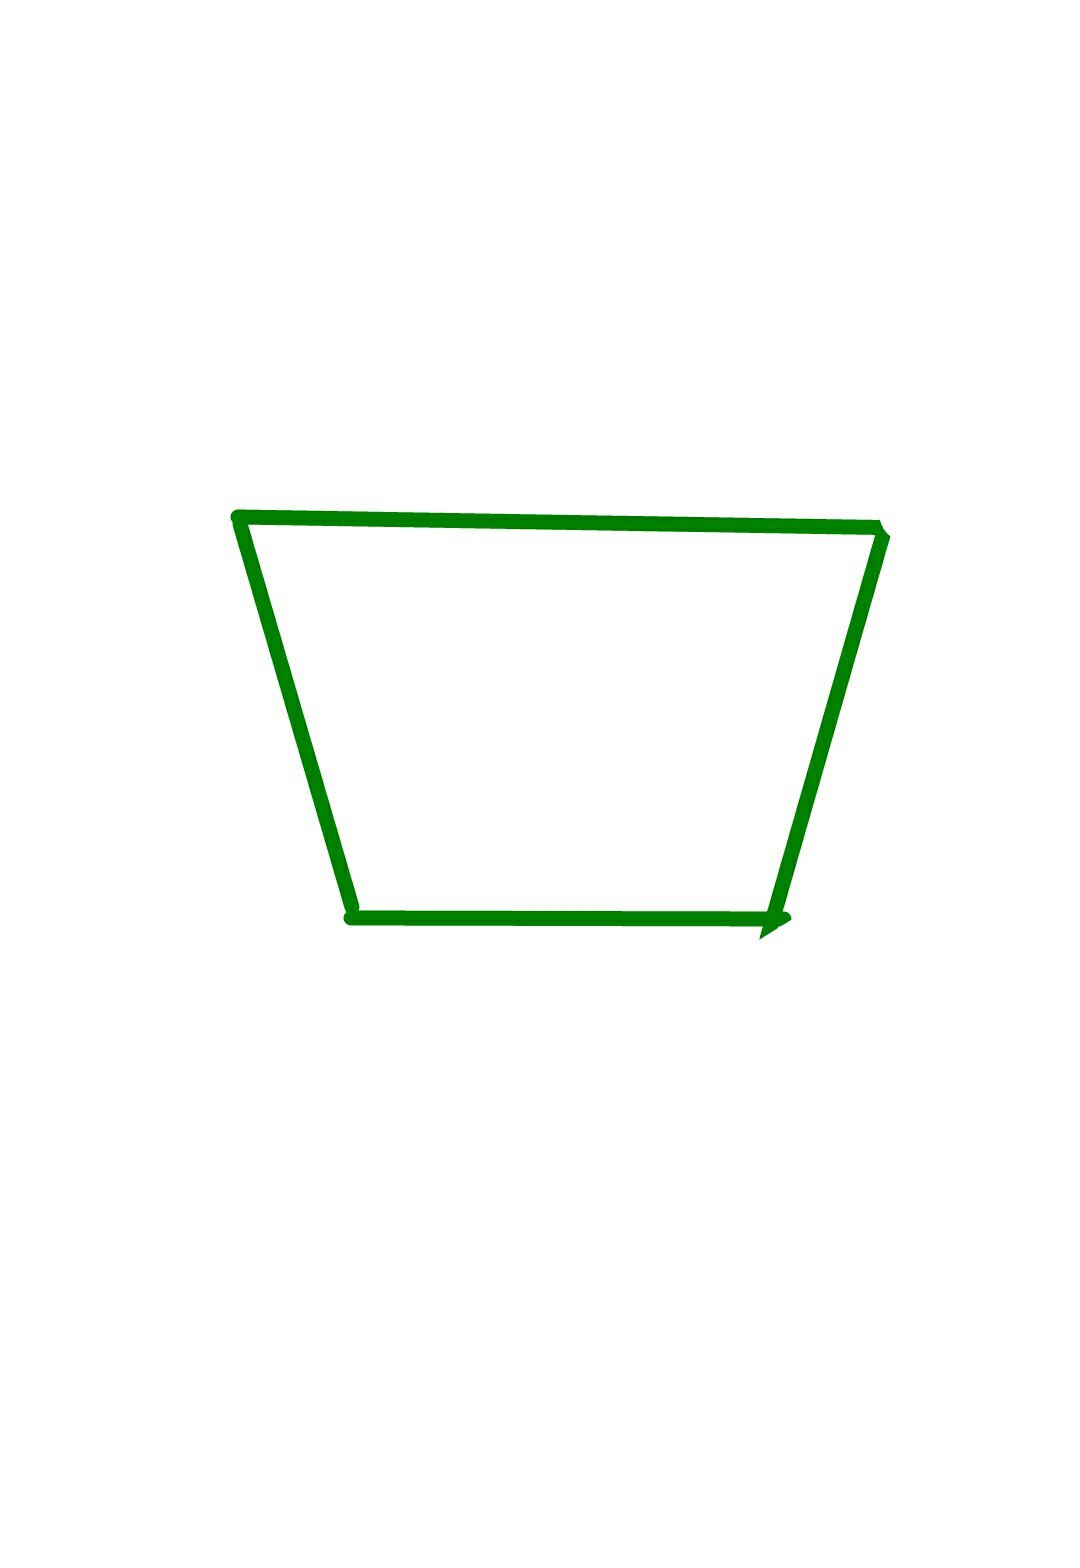 quadrilateral.jpg